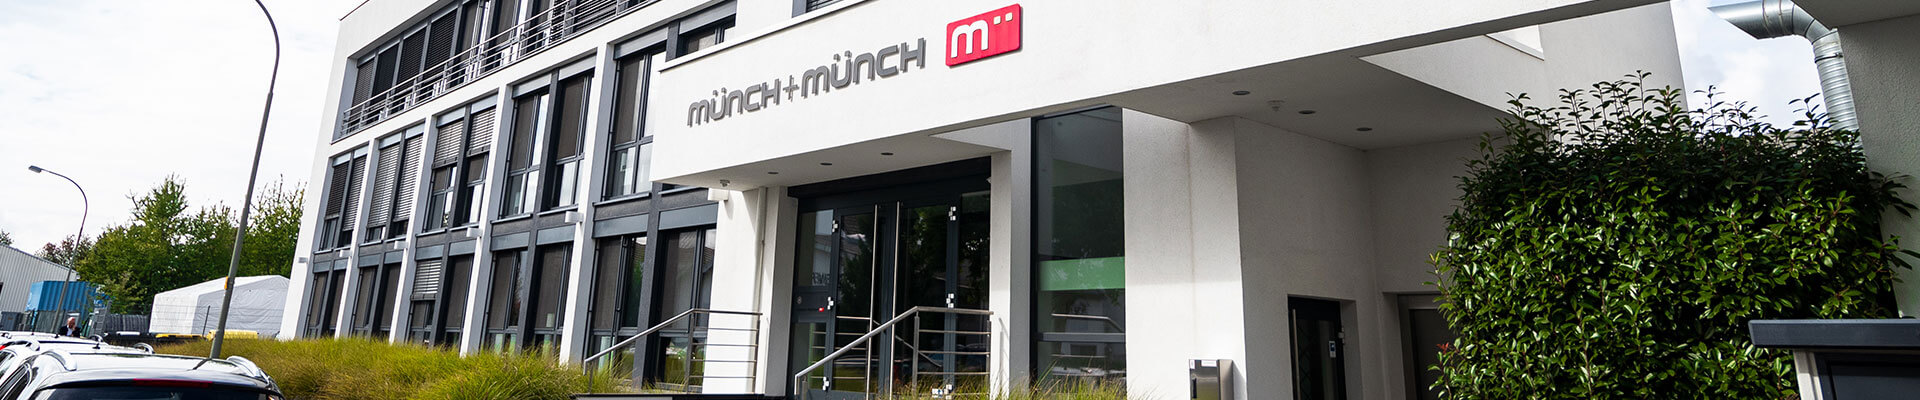 Münch + Münch